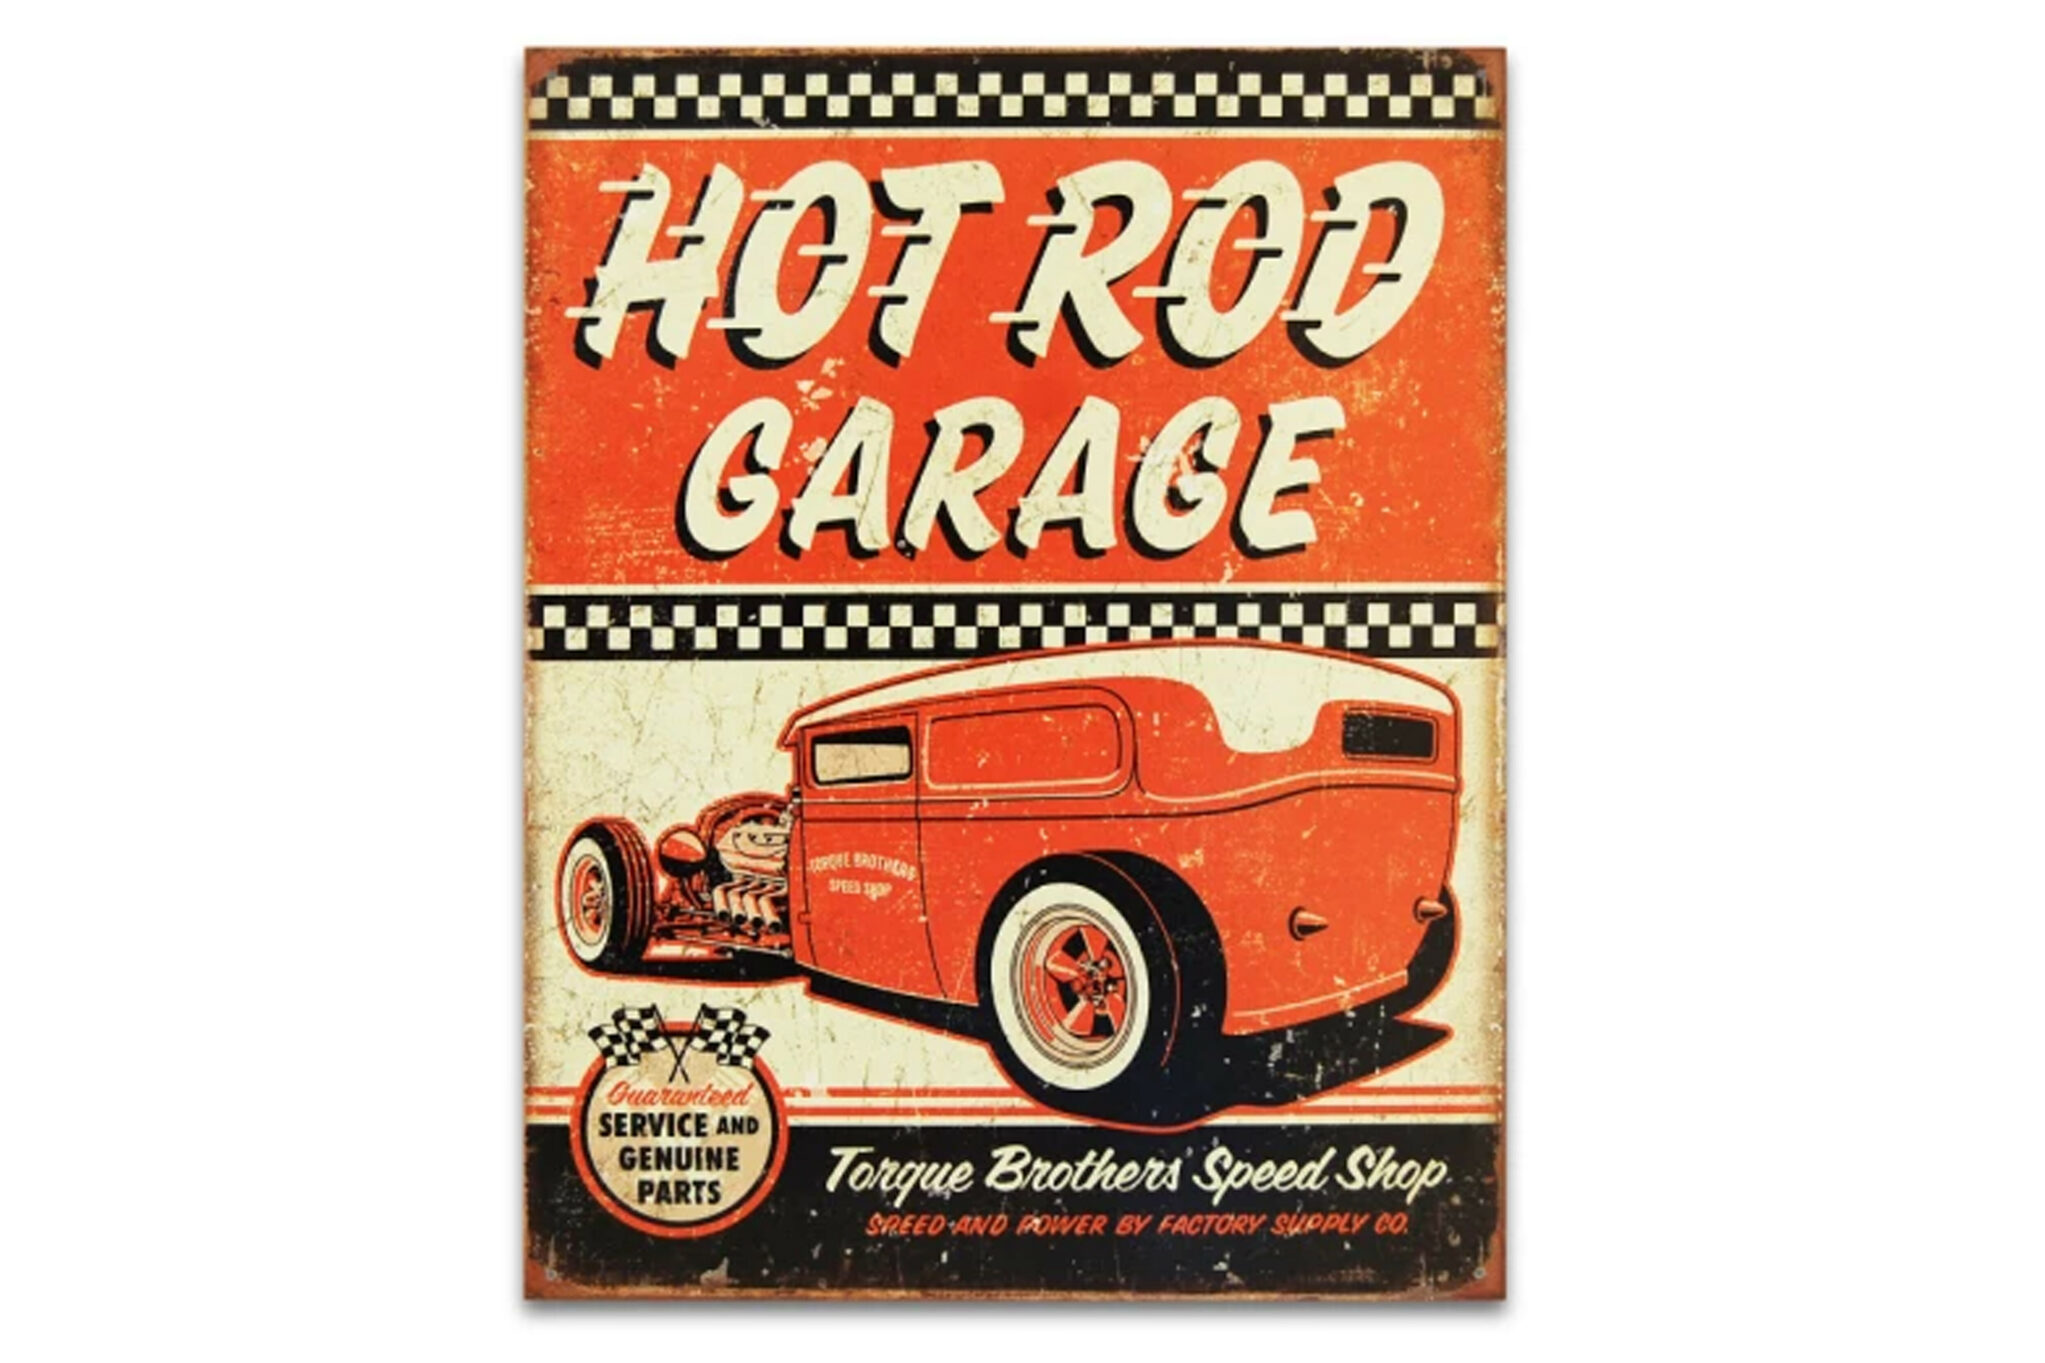 Street Machine Features Hot Rod Garage